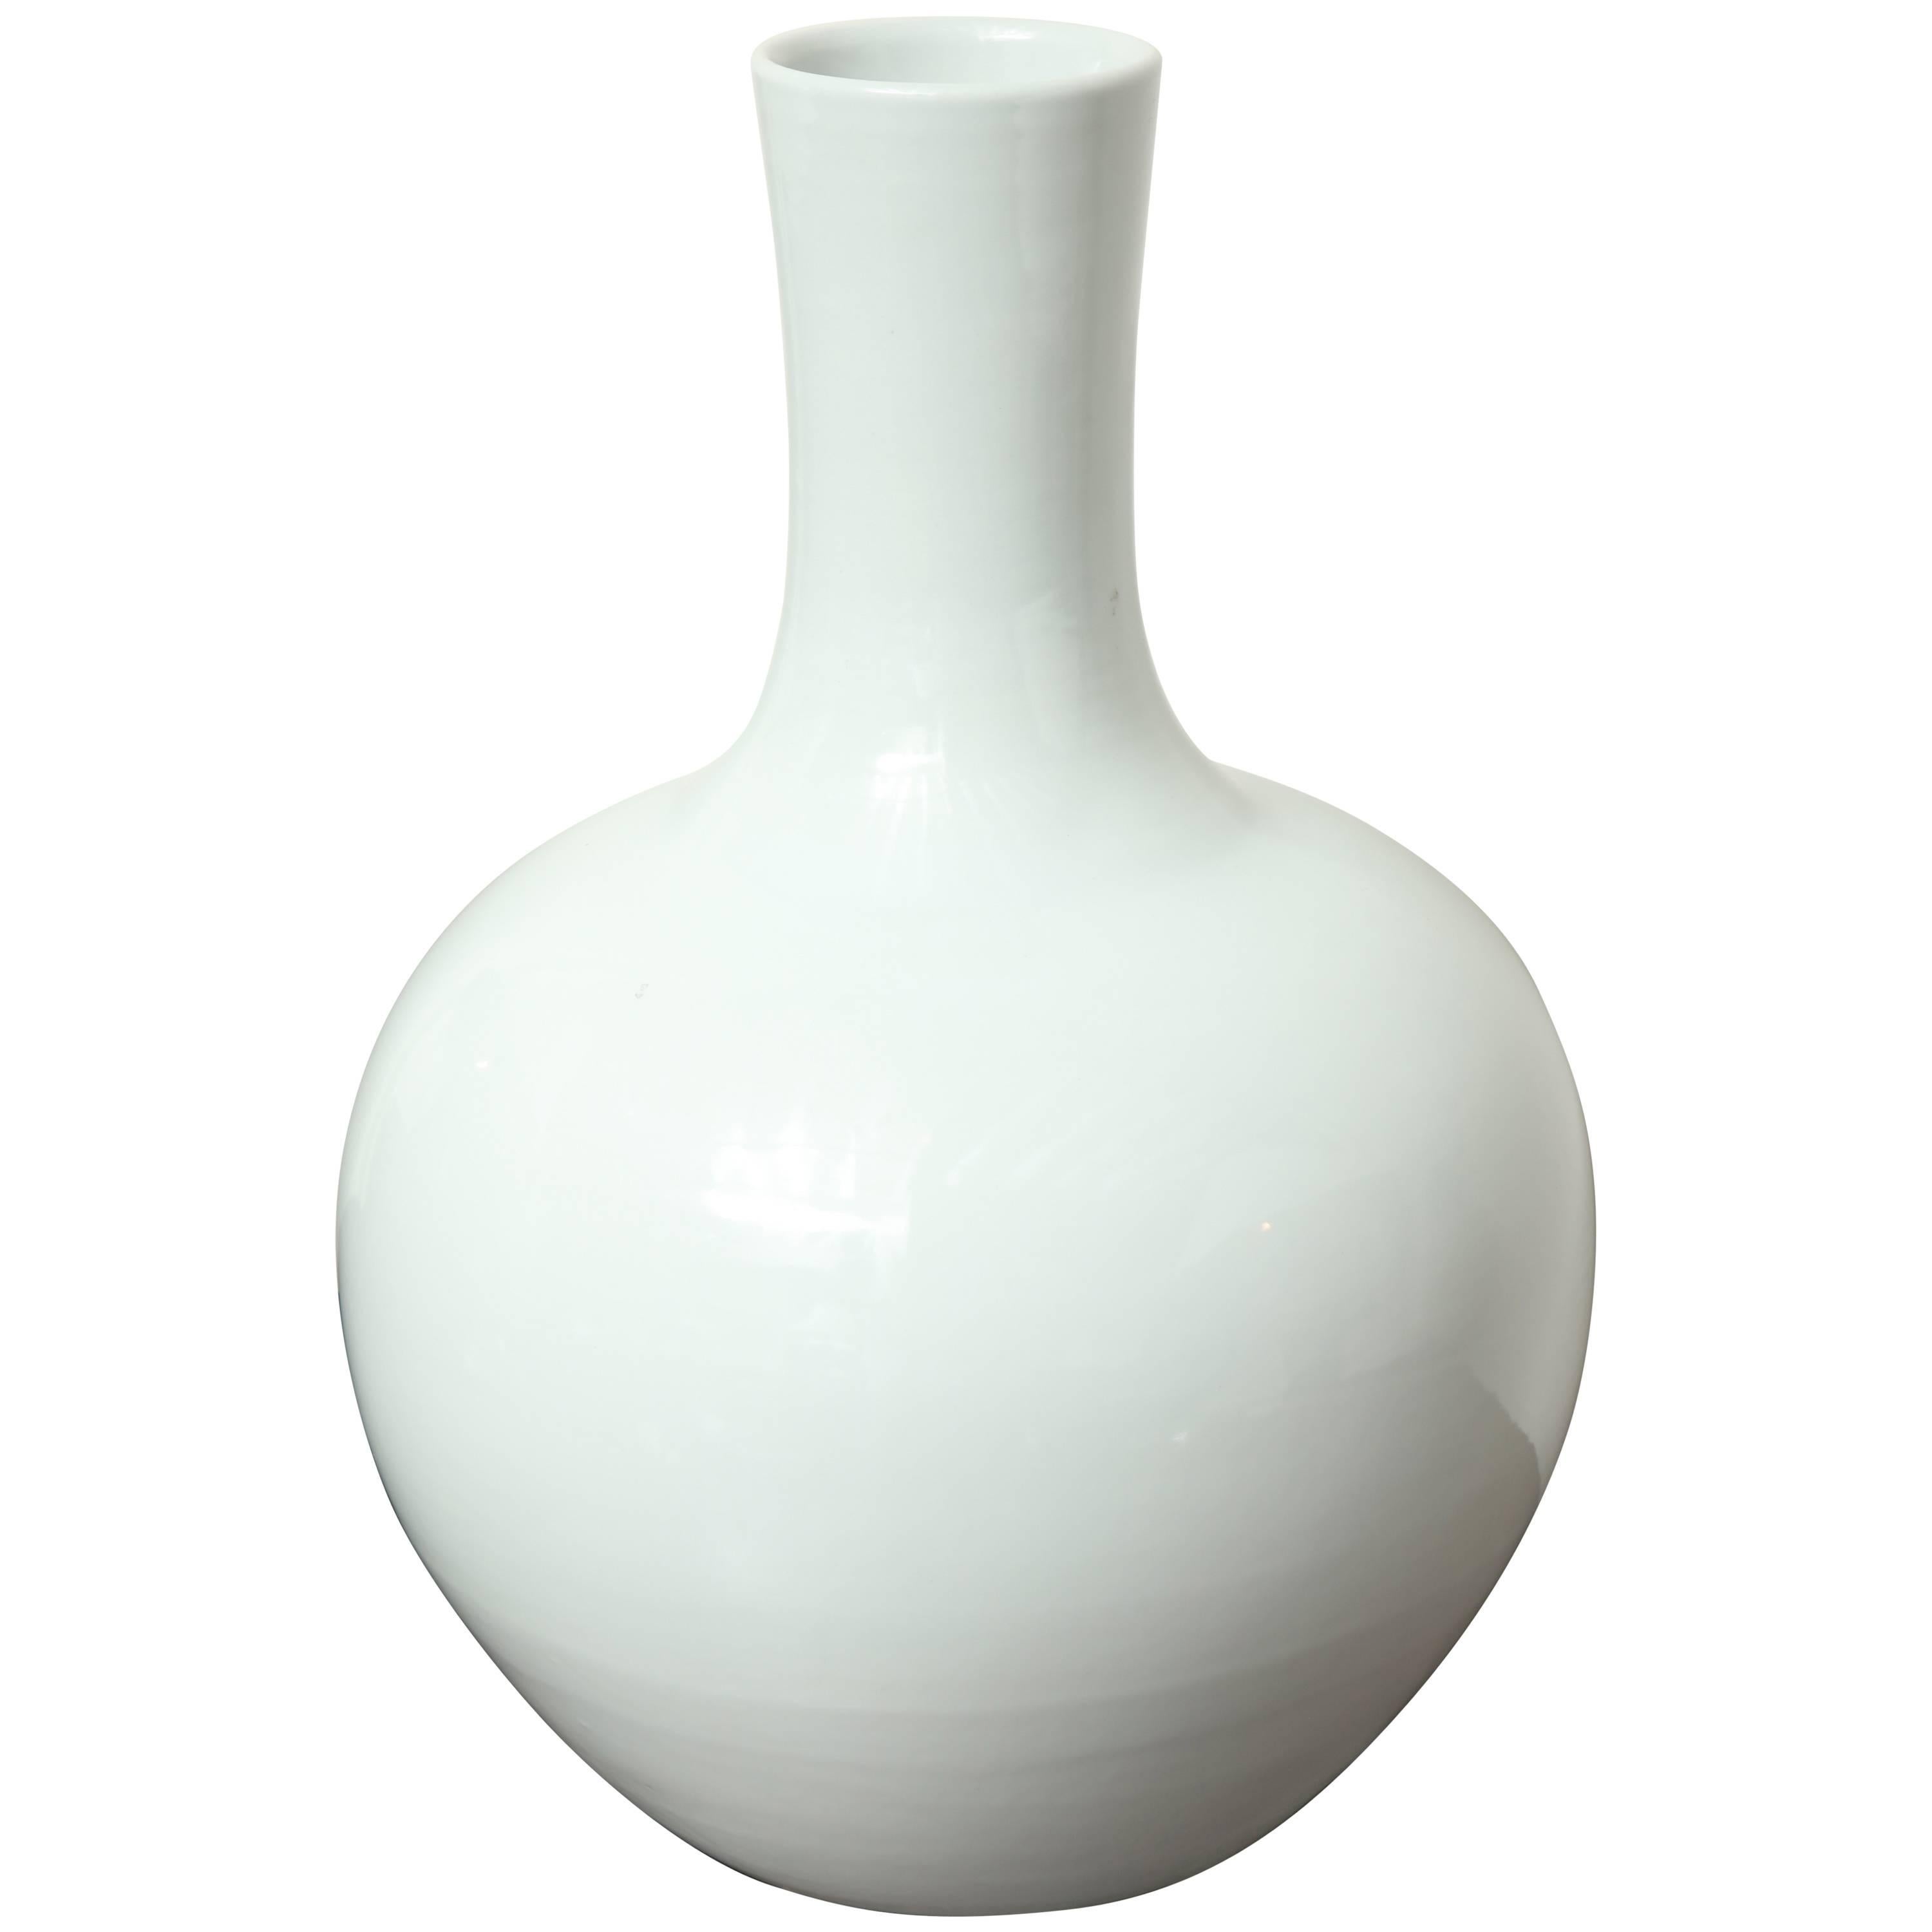 Contemporary White Ceramic Vase